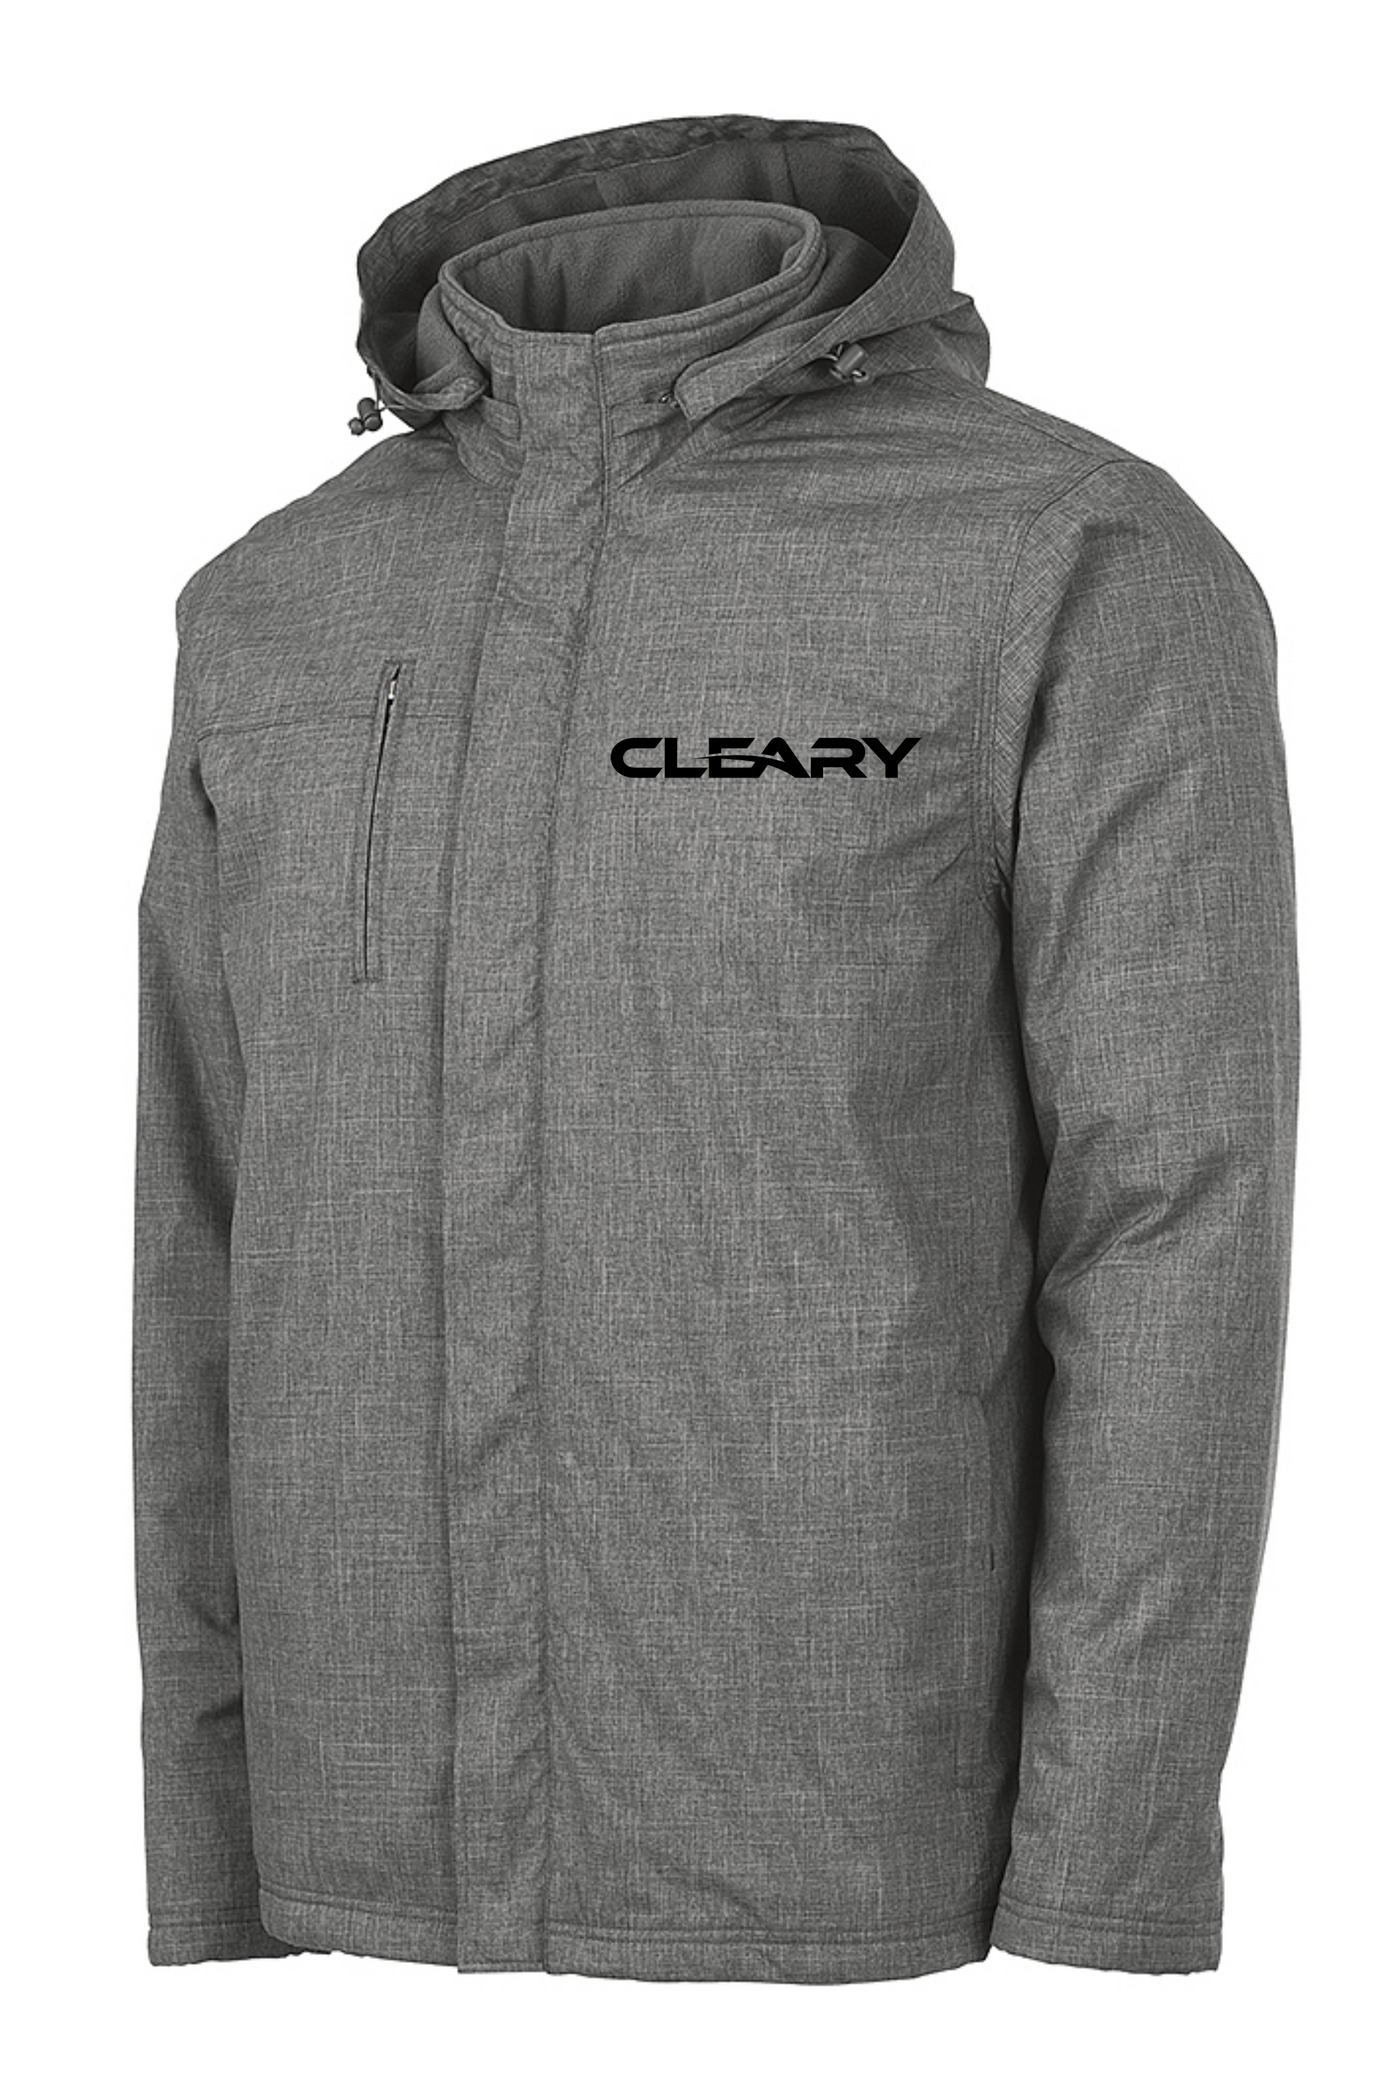 Cleary's Men's Journey Parka Grey Melange